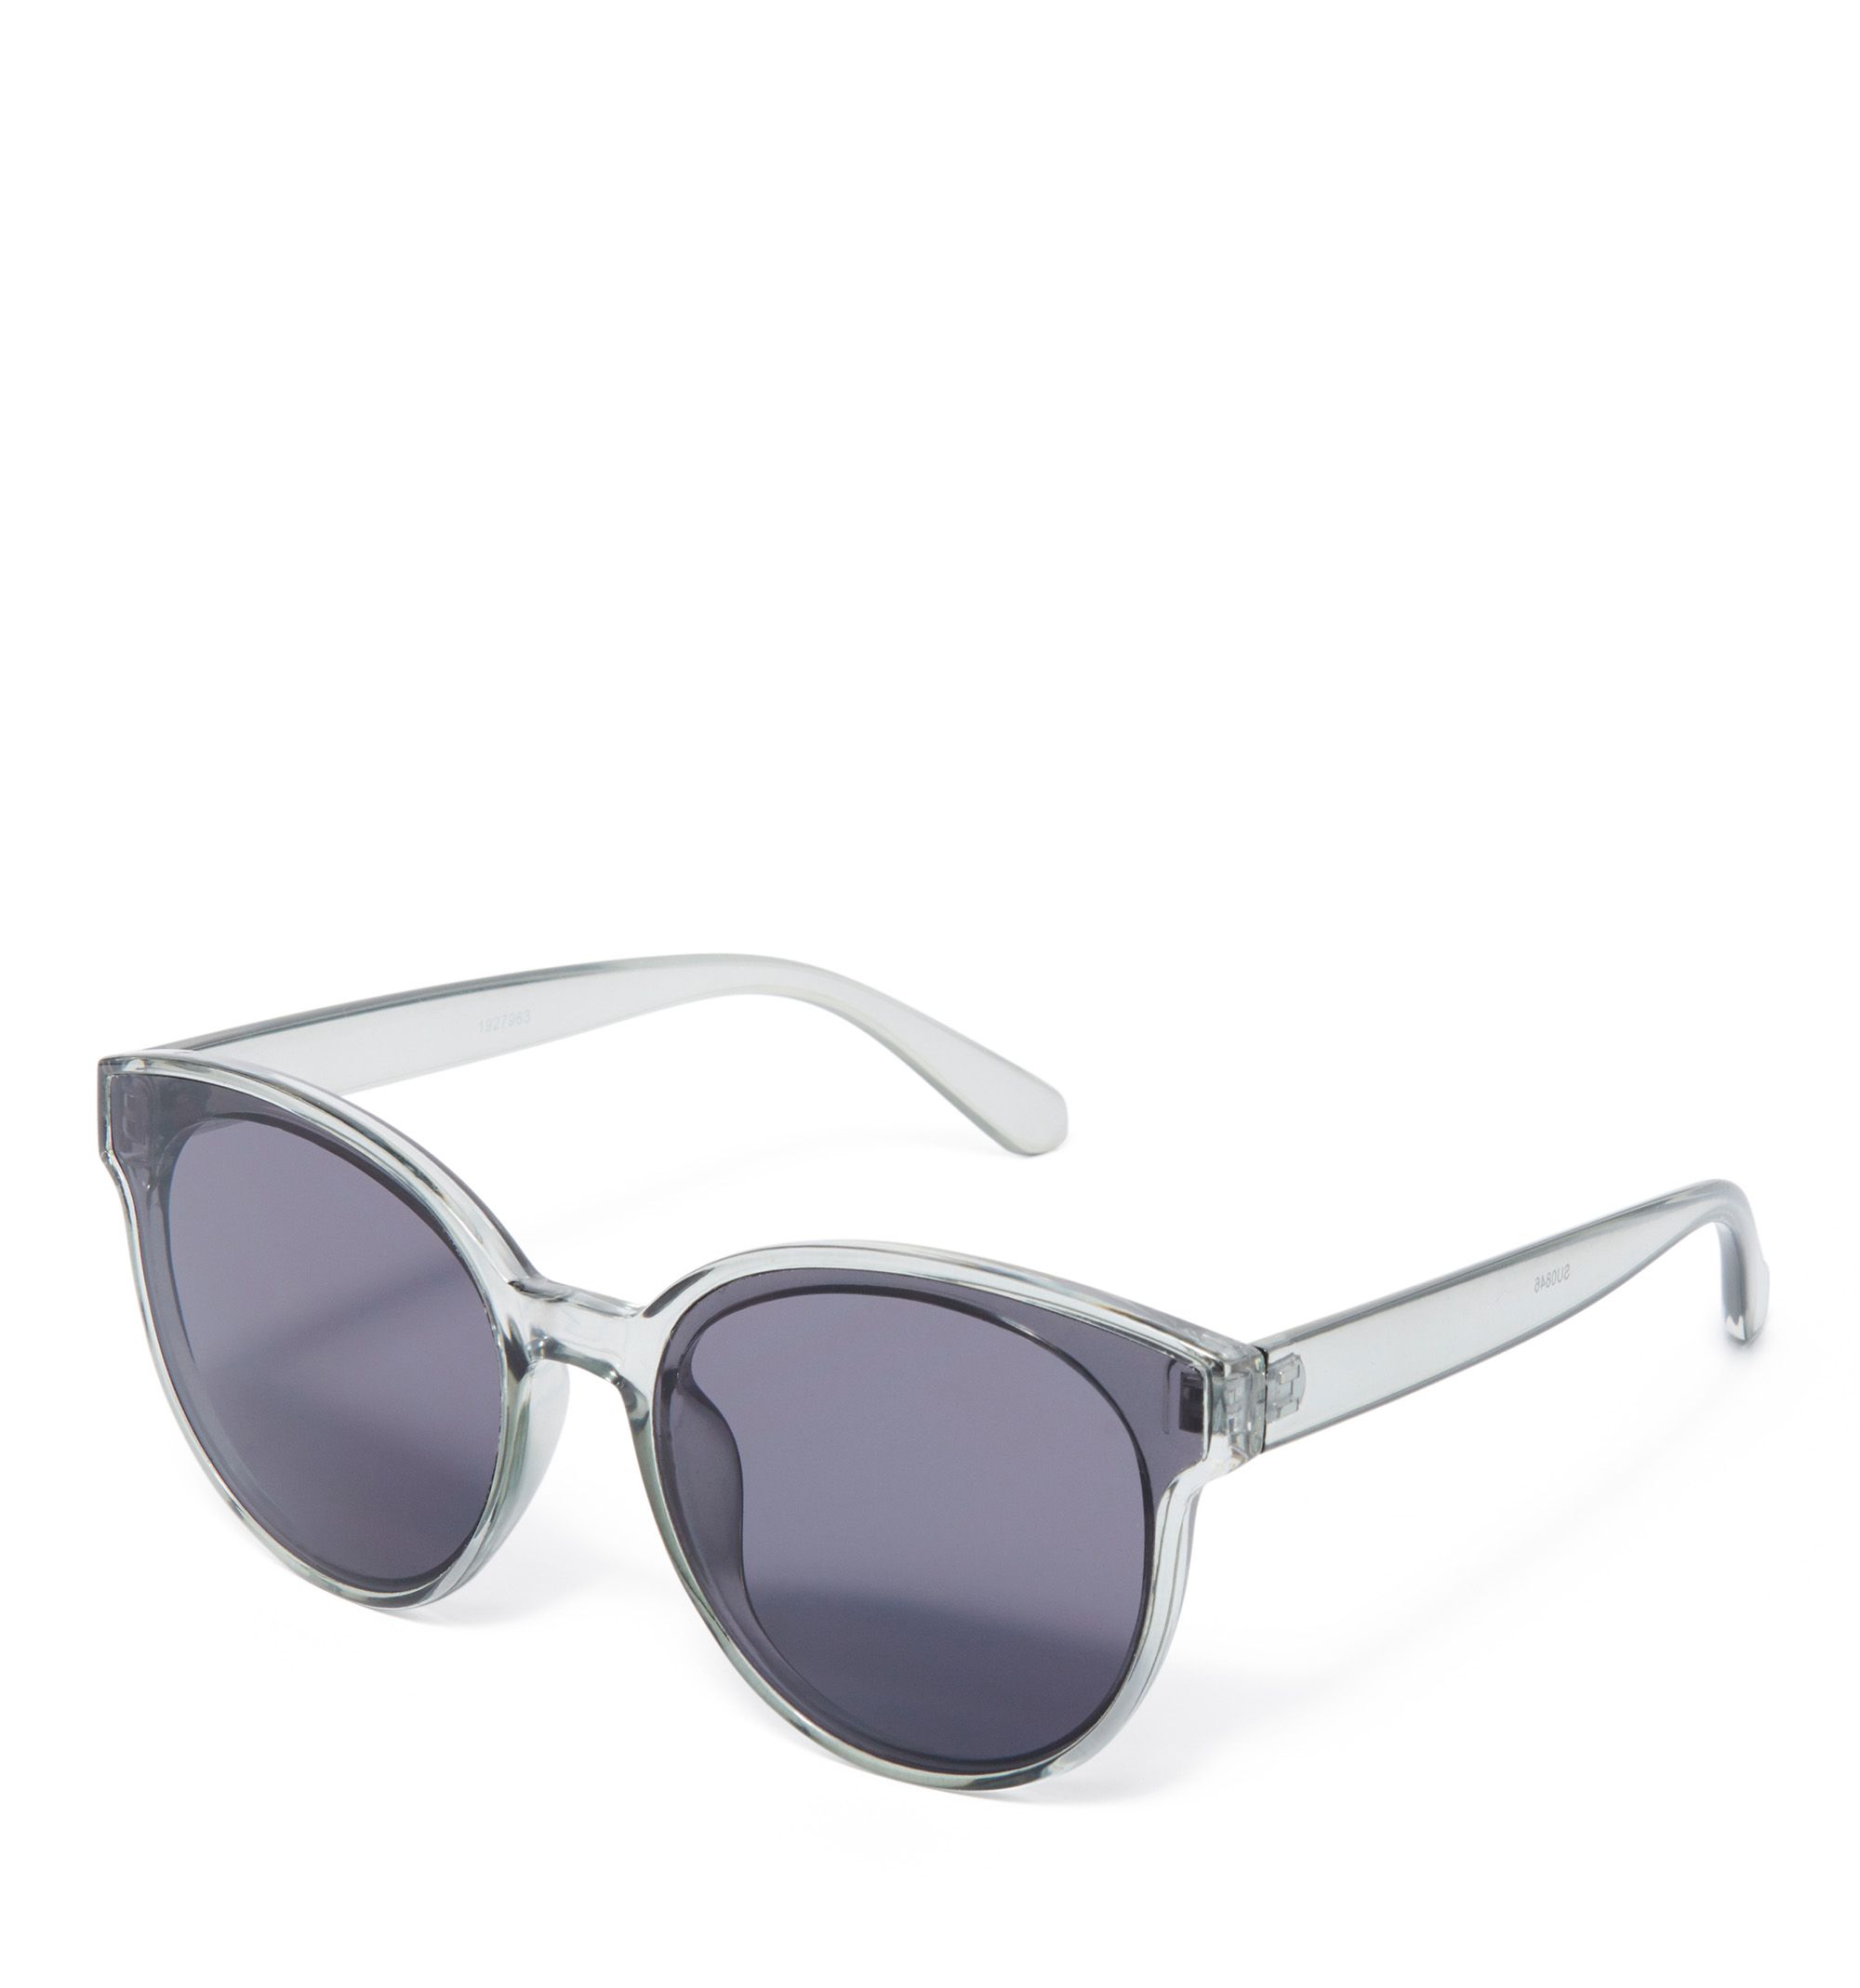 sunglasses case - forever new | Sunglasses case, Forever new, Wallet